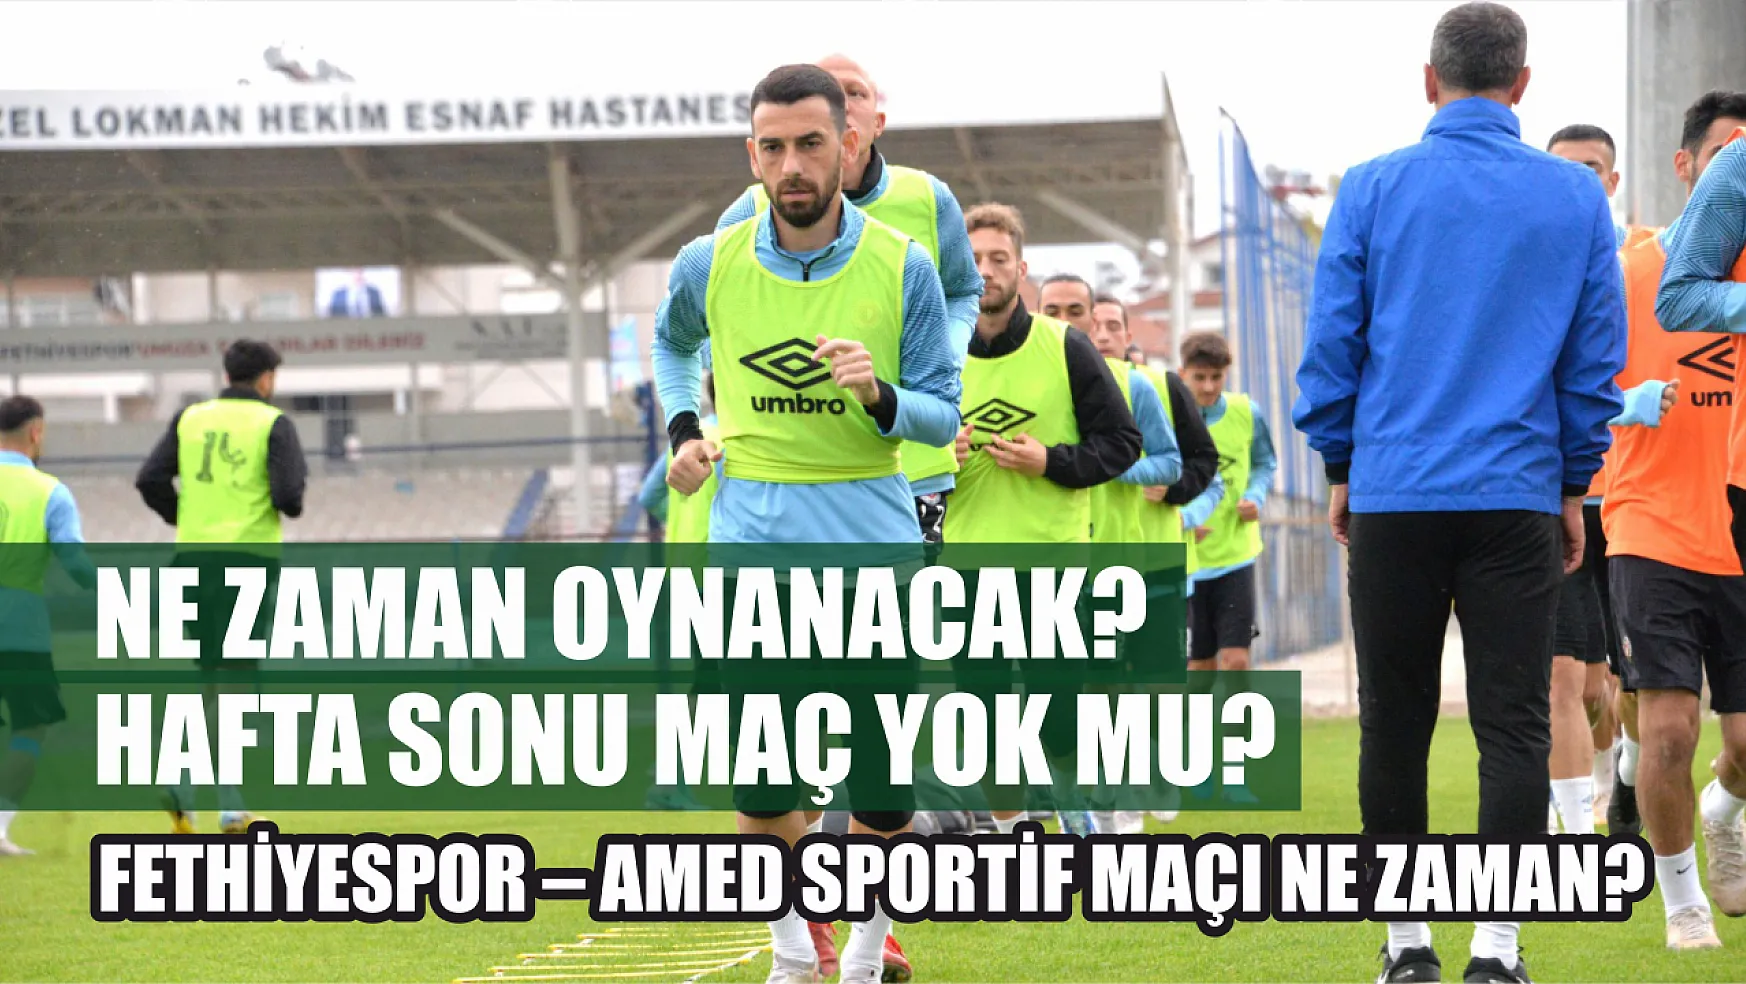 Fethiyespor – Amed Sportif Maçı Ne Zaman? Hafta Sonu Maç Yok Mu? Ne Zaman Oynanacak?